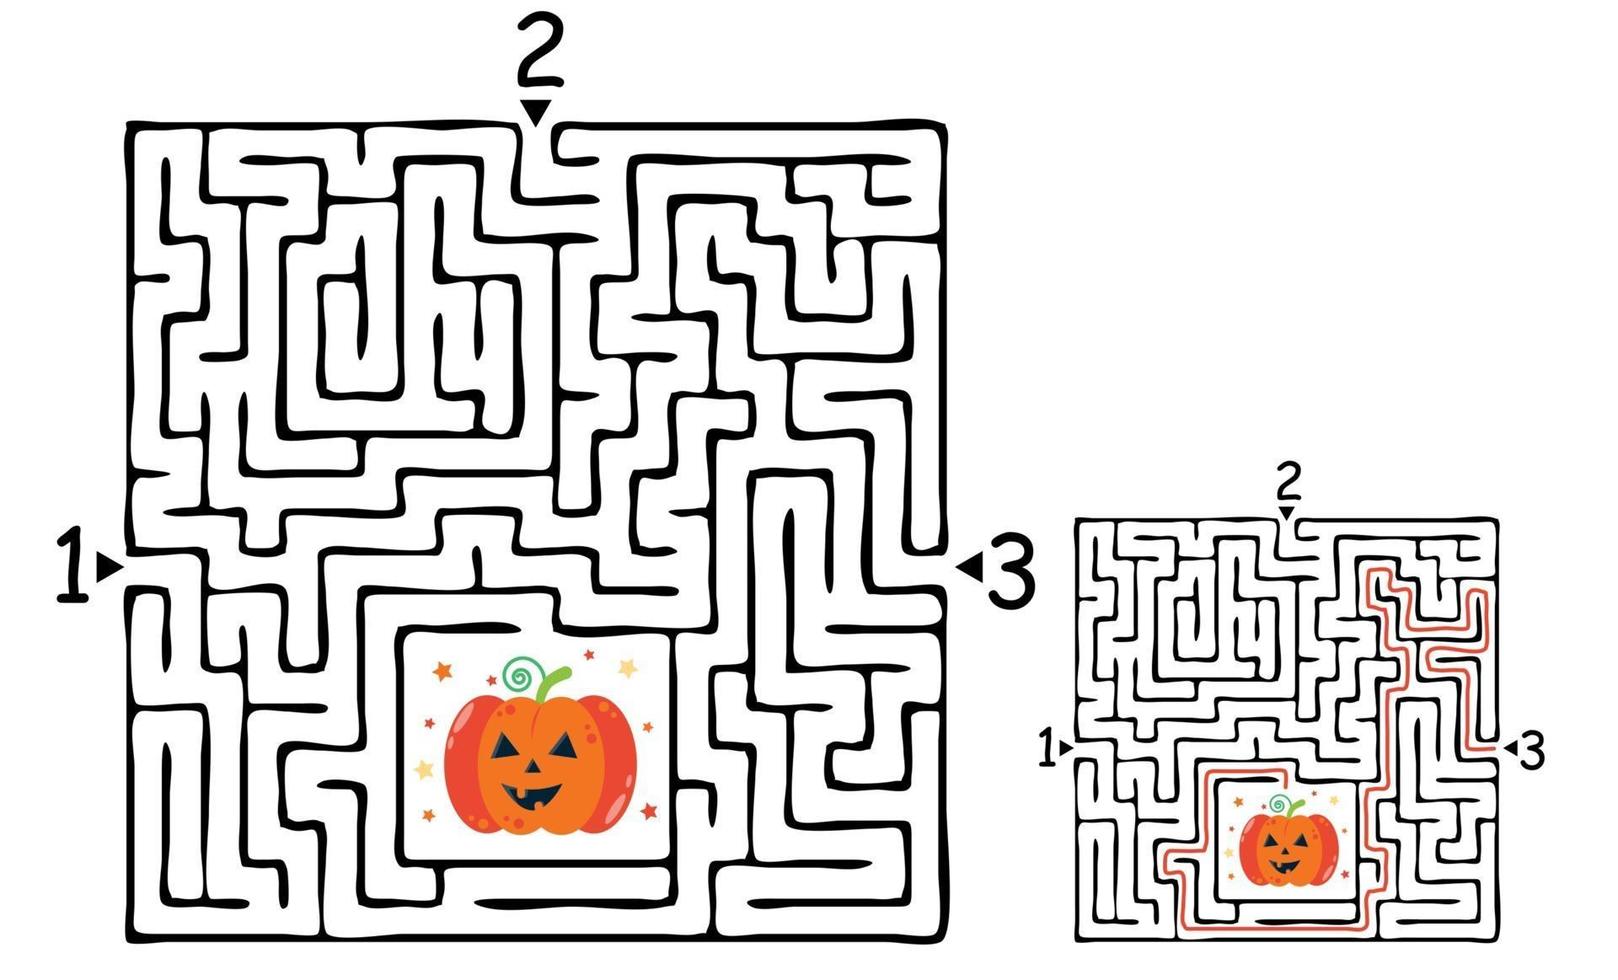 juego de laberinto de laberinto cuadrado de halloween para niños. lógica laberinto vector